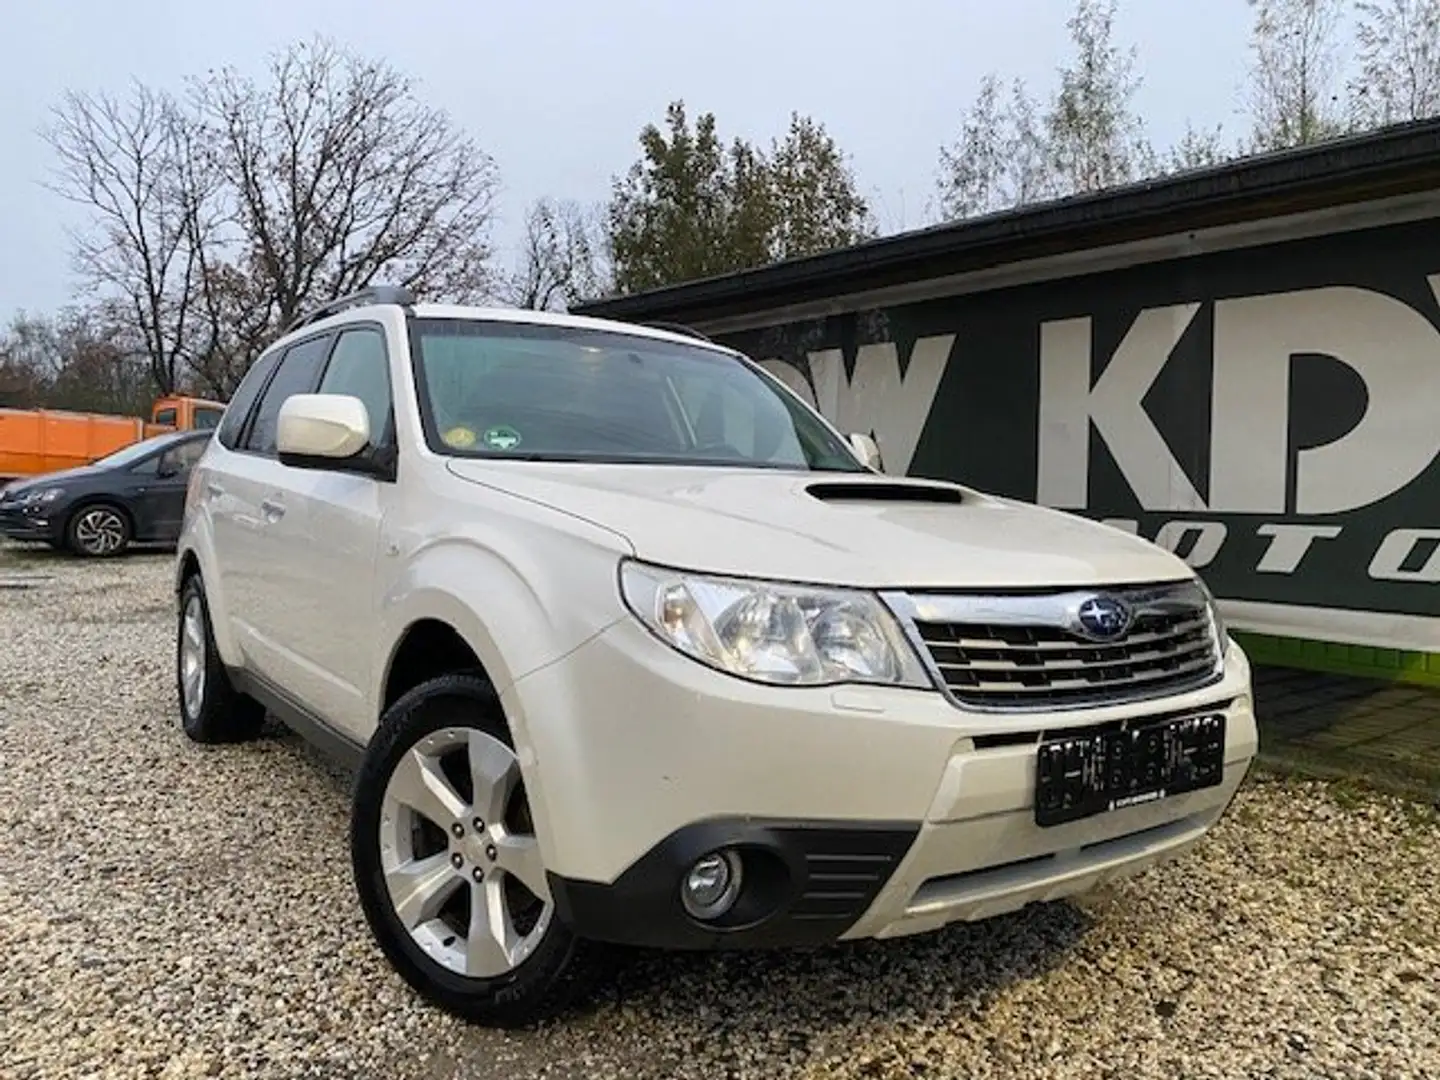 Subaru Forester SUV/4x4/Pick-Up en Blanc occasion à Kampenhout pour € 4  200,-